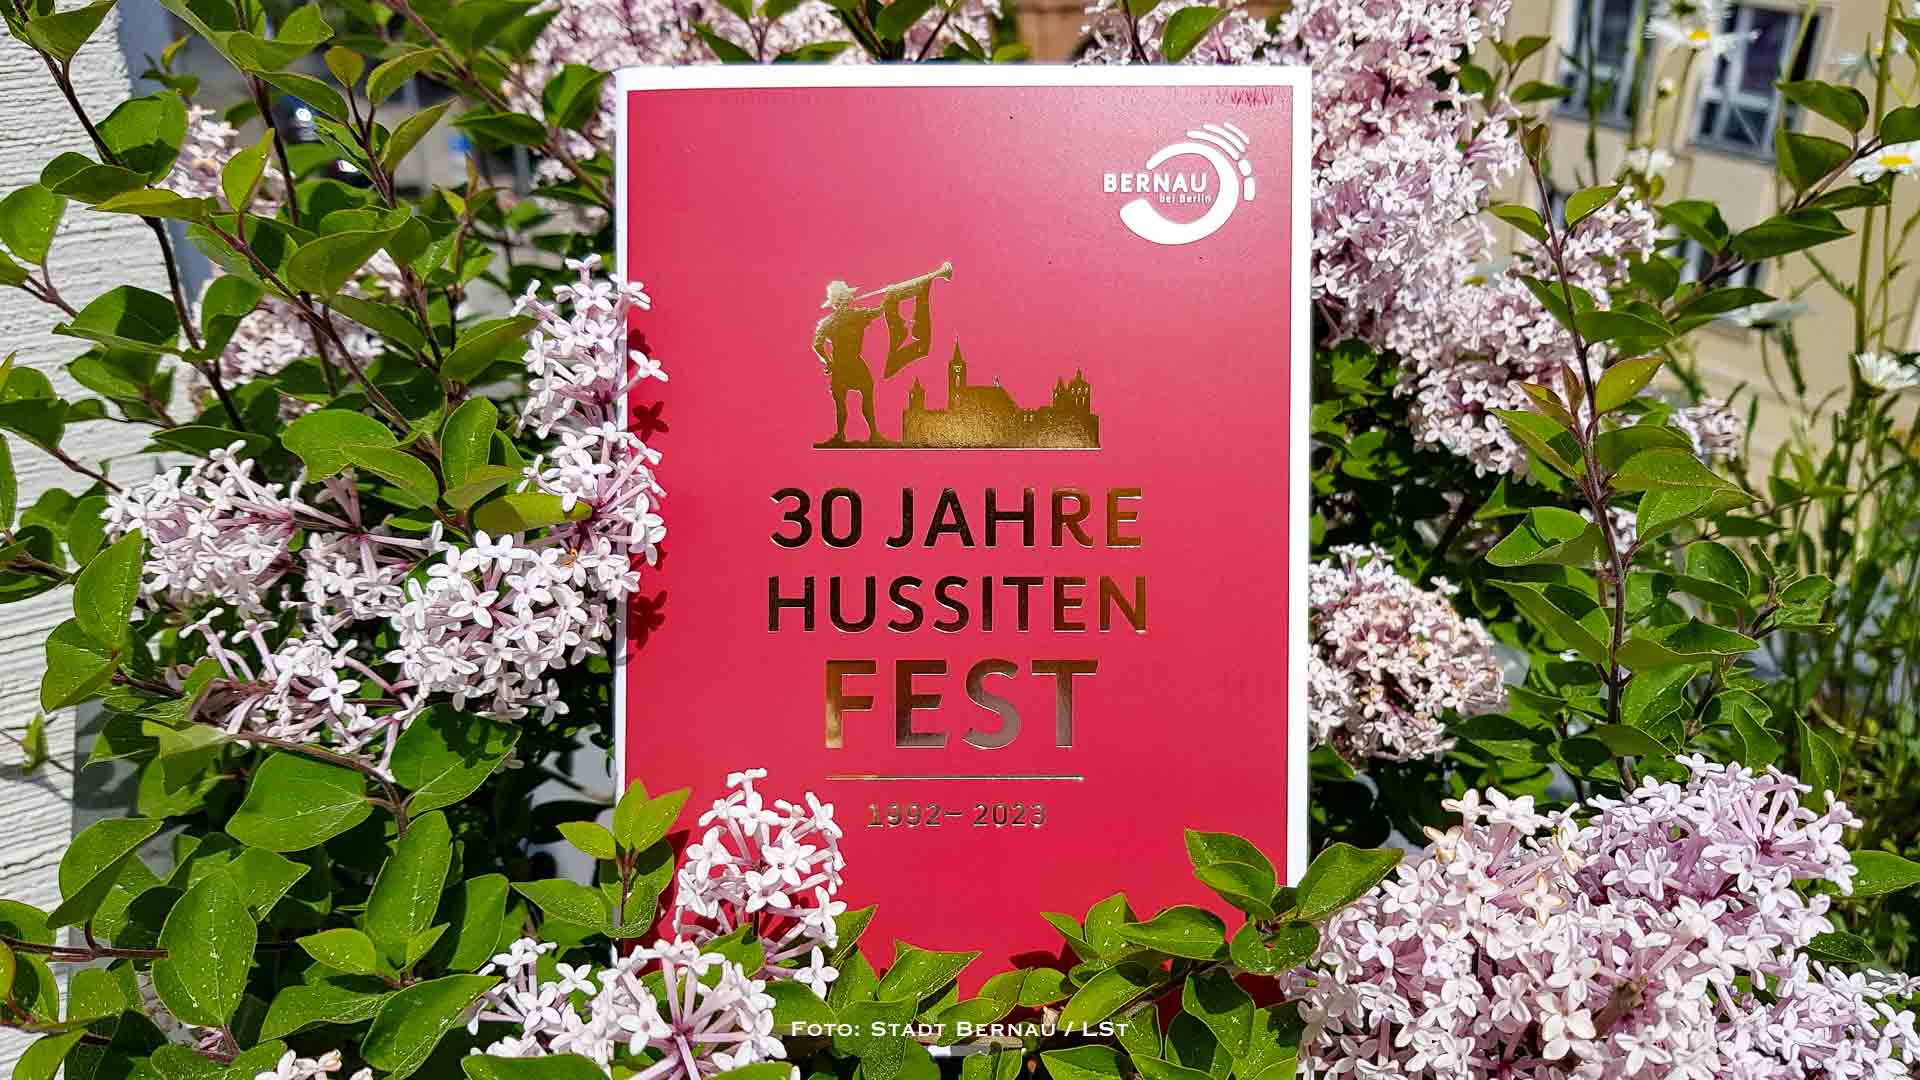 30 Jahre Hussitenfest Bernau - Jubiläumsbroschüre erhältlich